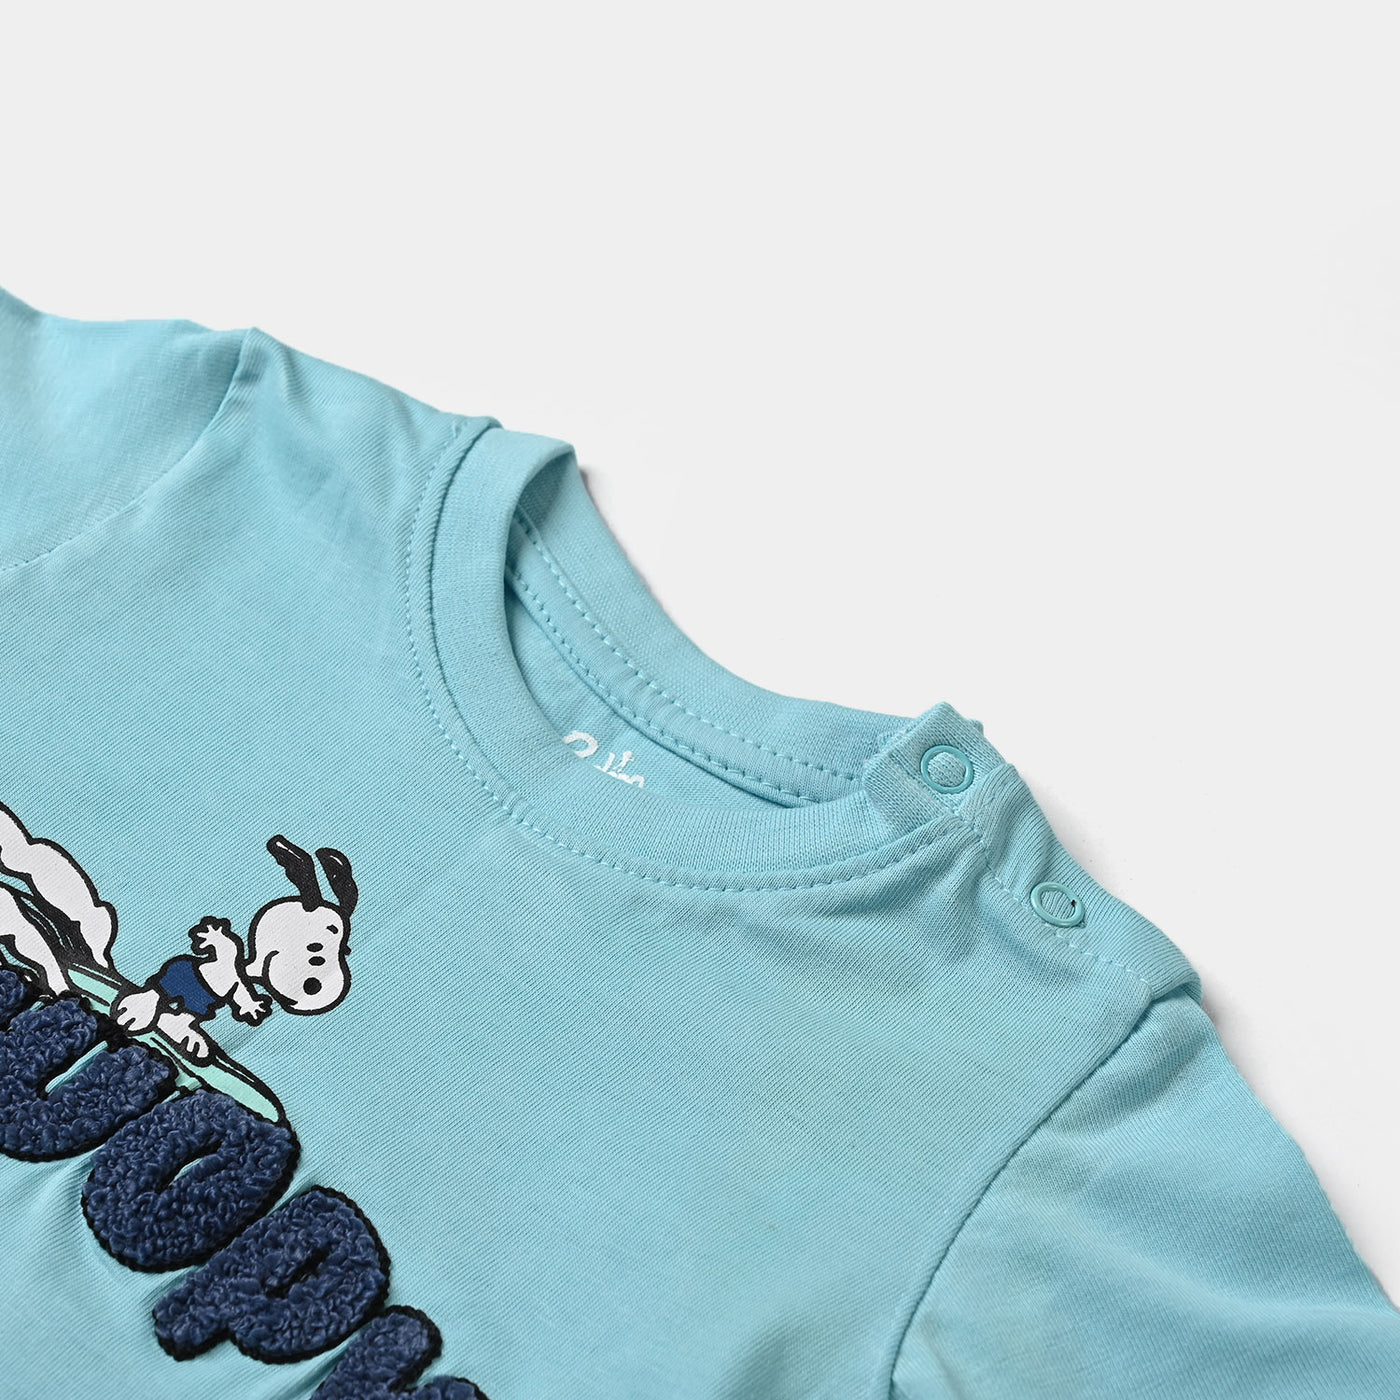 Infant Boys Cotton Jersey T-Shirt -T. Breeze